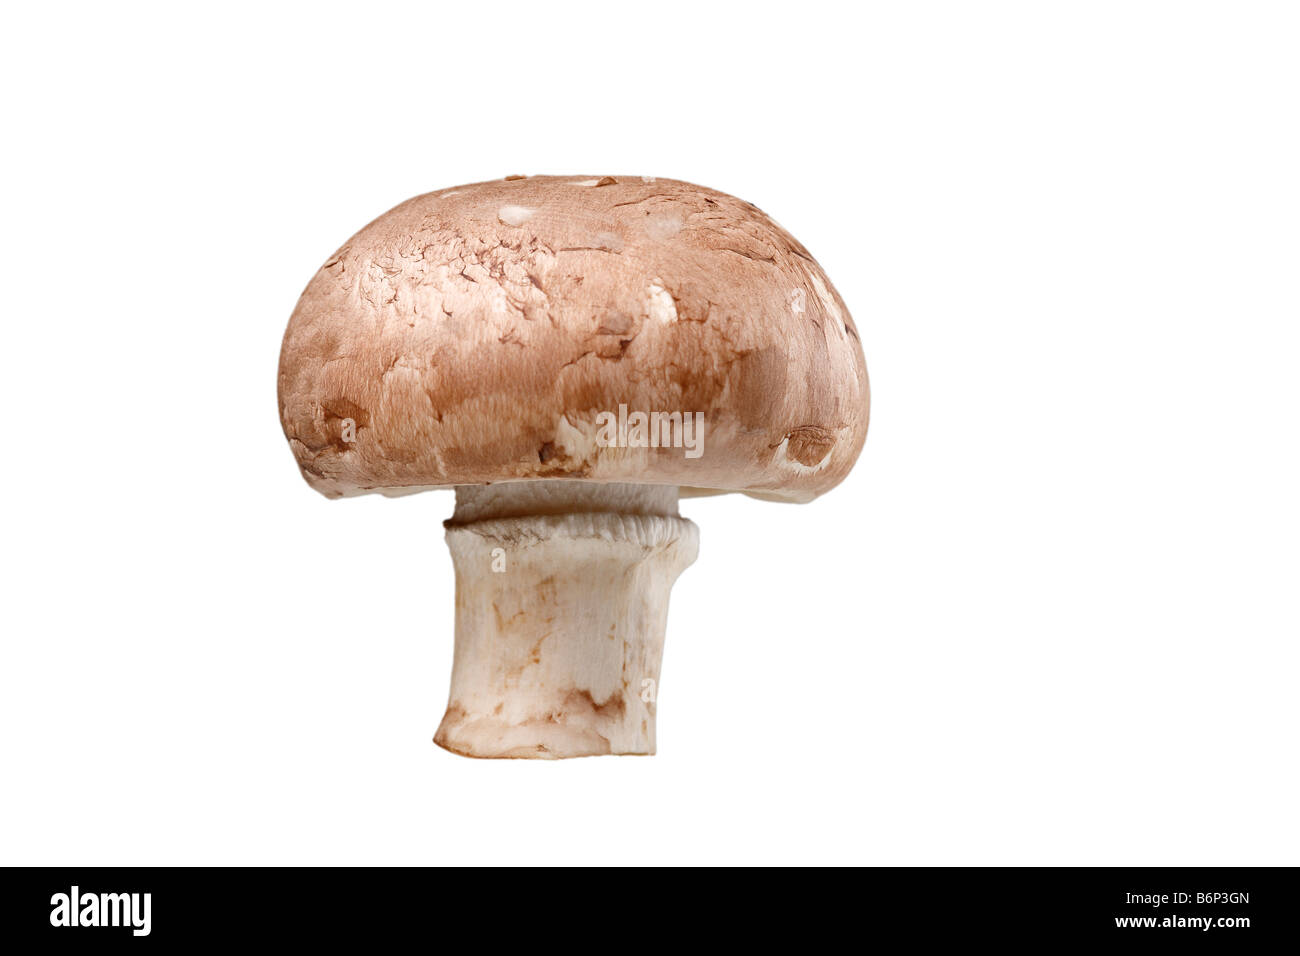 cultivated mushroom (agaricus bisporus) Stock Photo